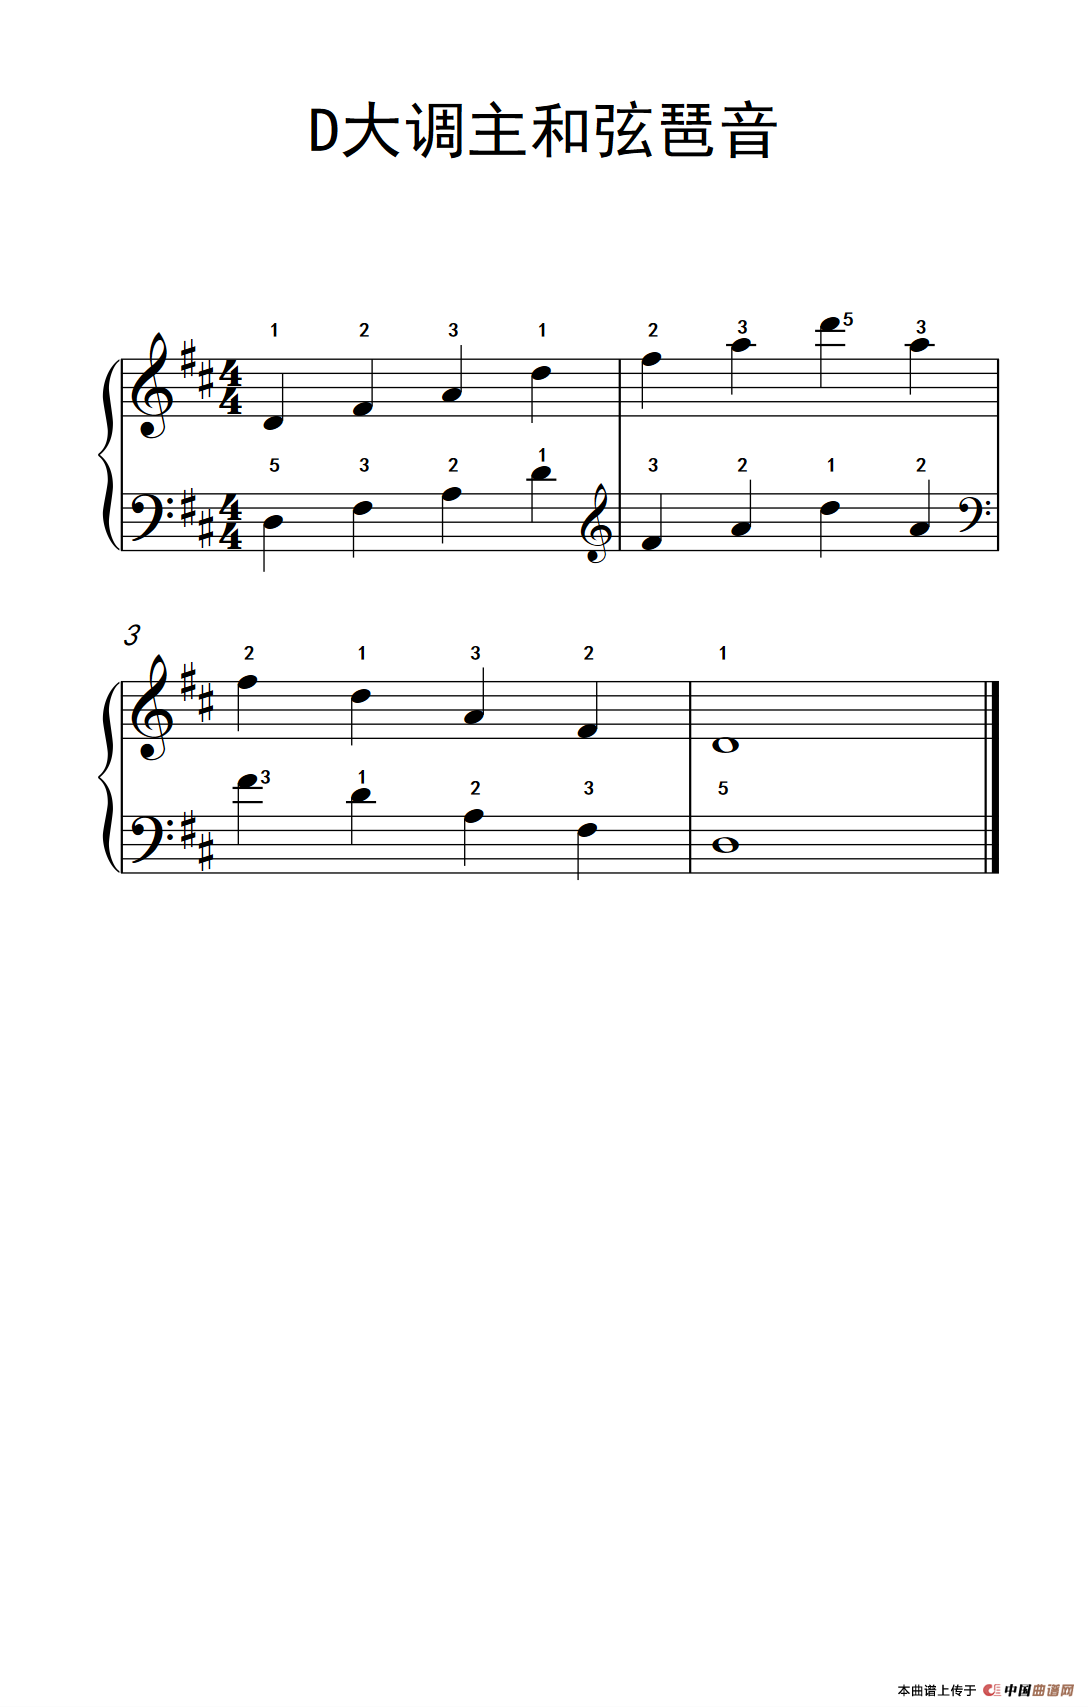 《D大调主和弦琶音》钢琴曲谱图分享